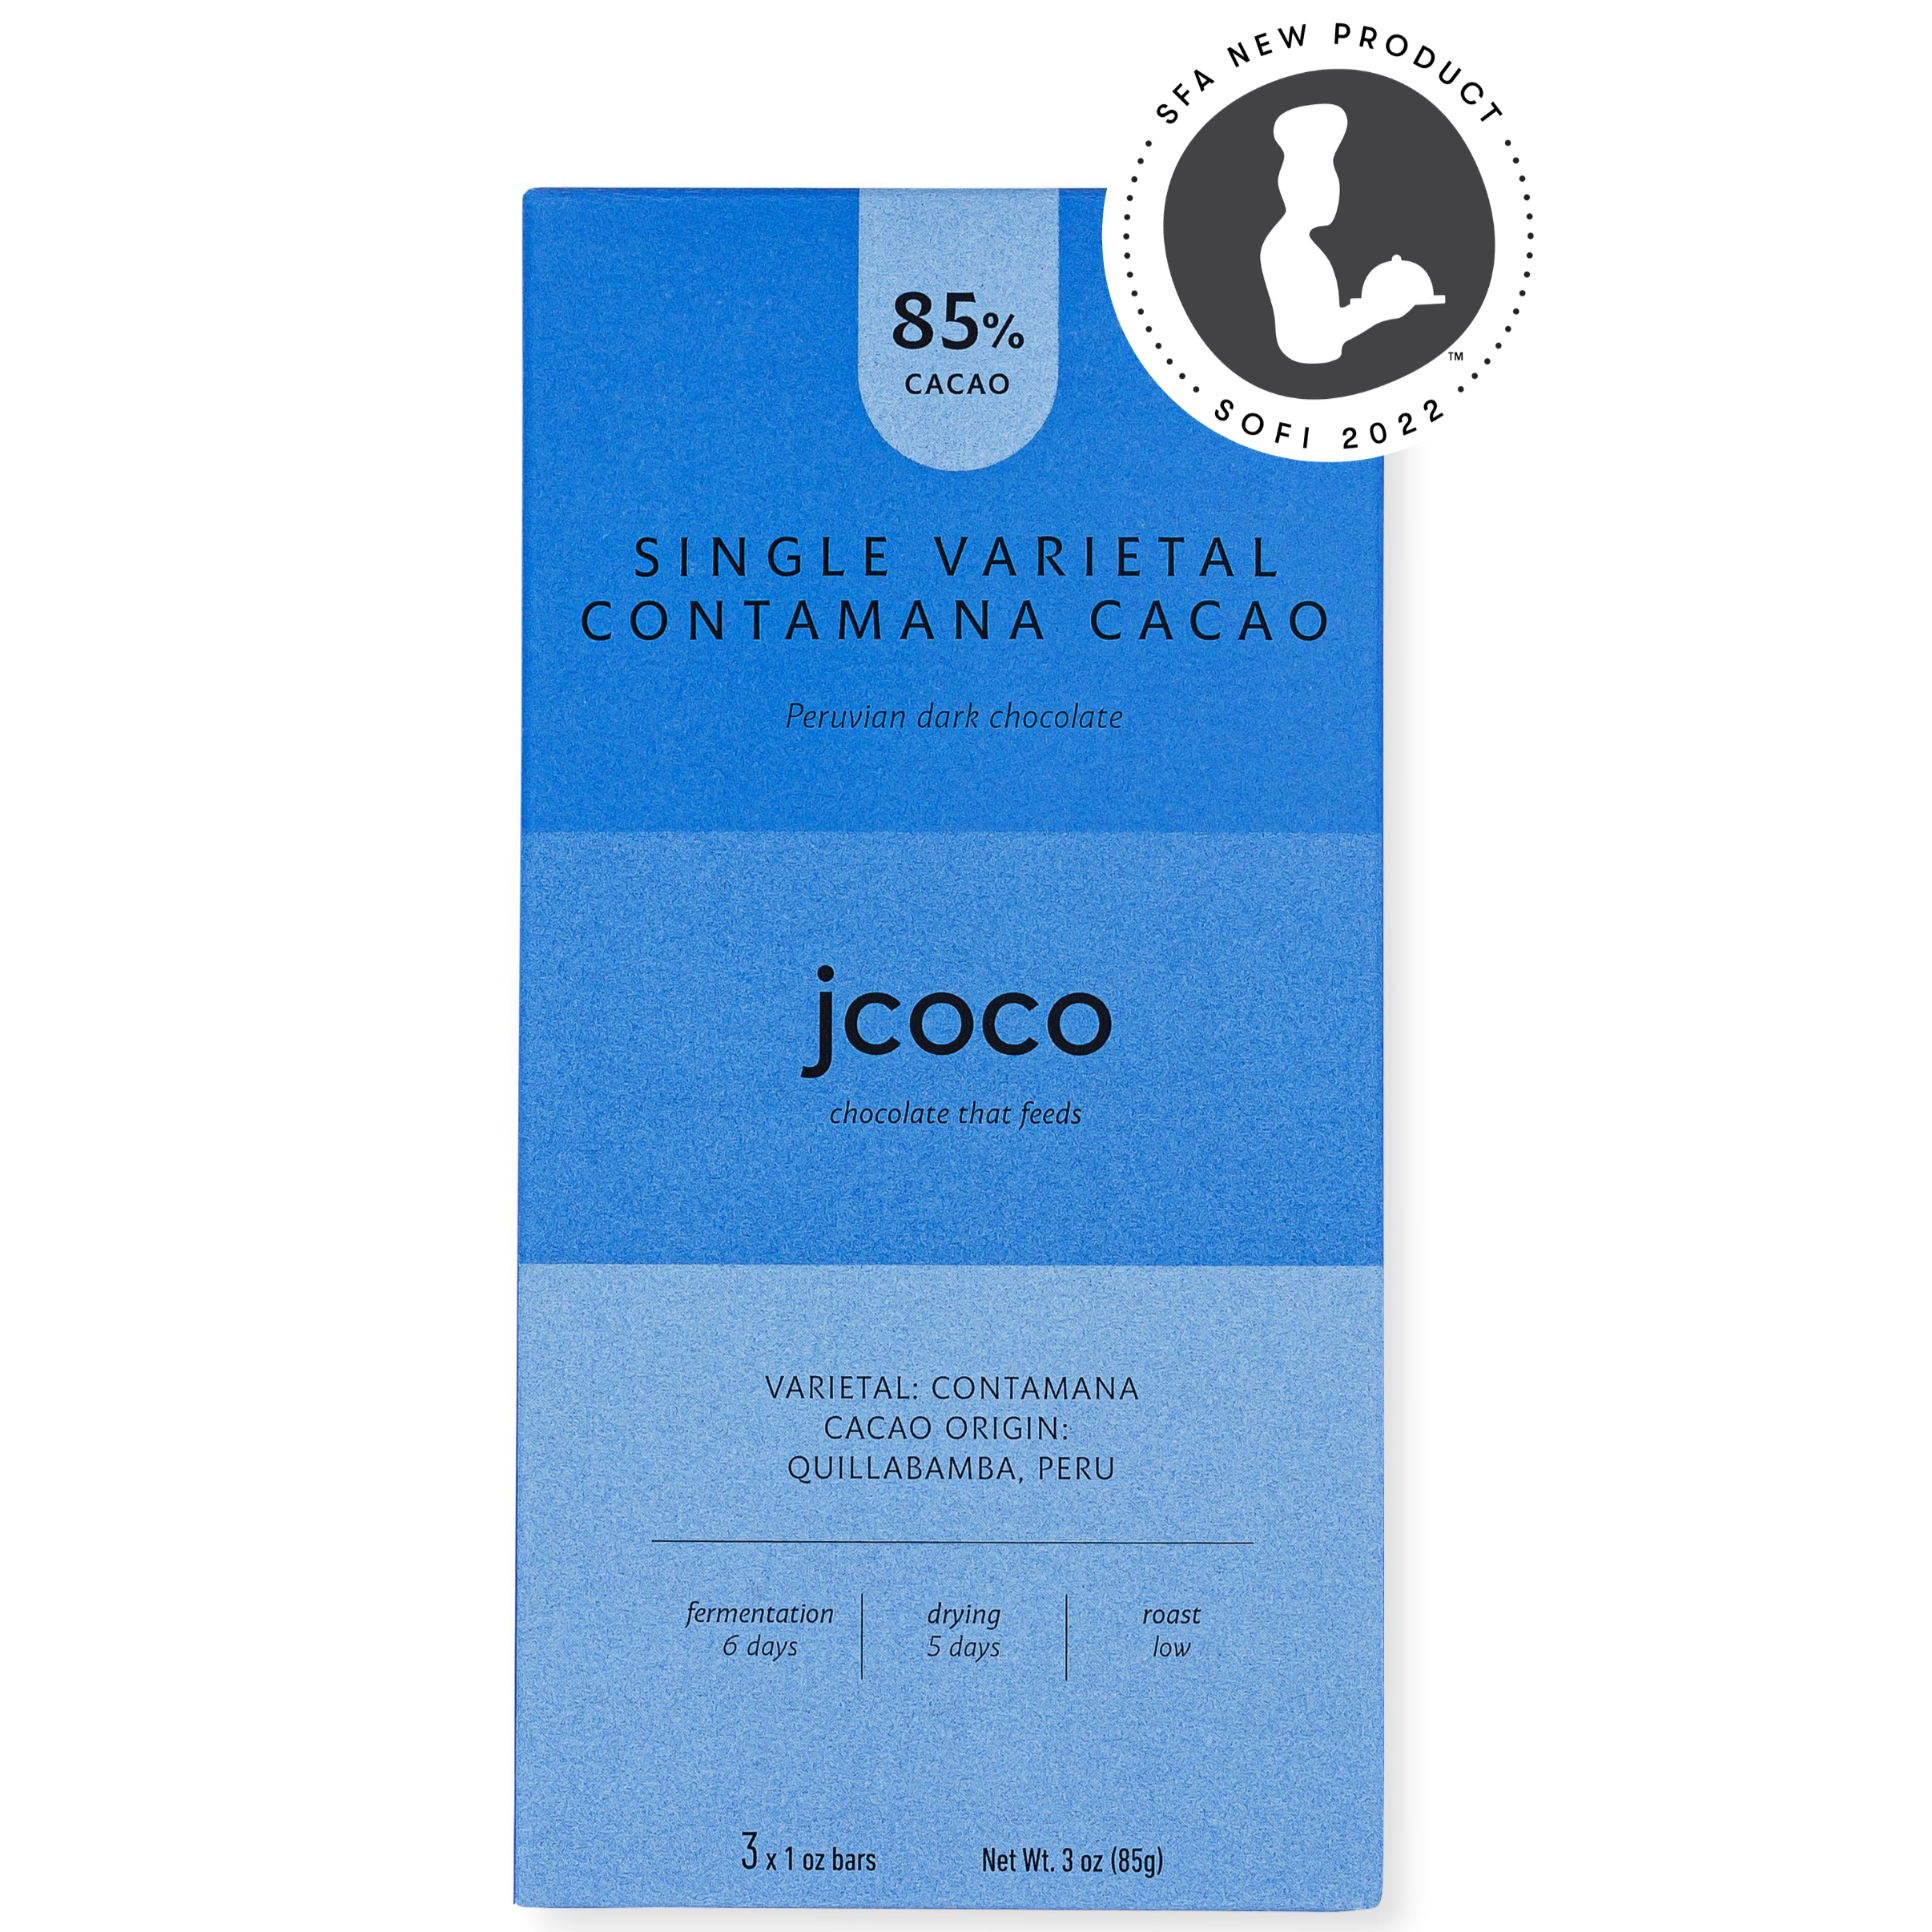 85% Cacao 3oz Single Varietal Contamana Cacao Chocolate Bar